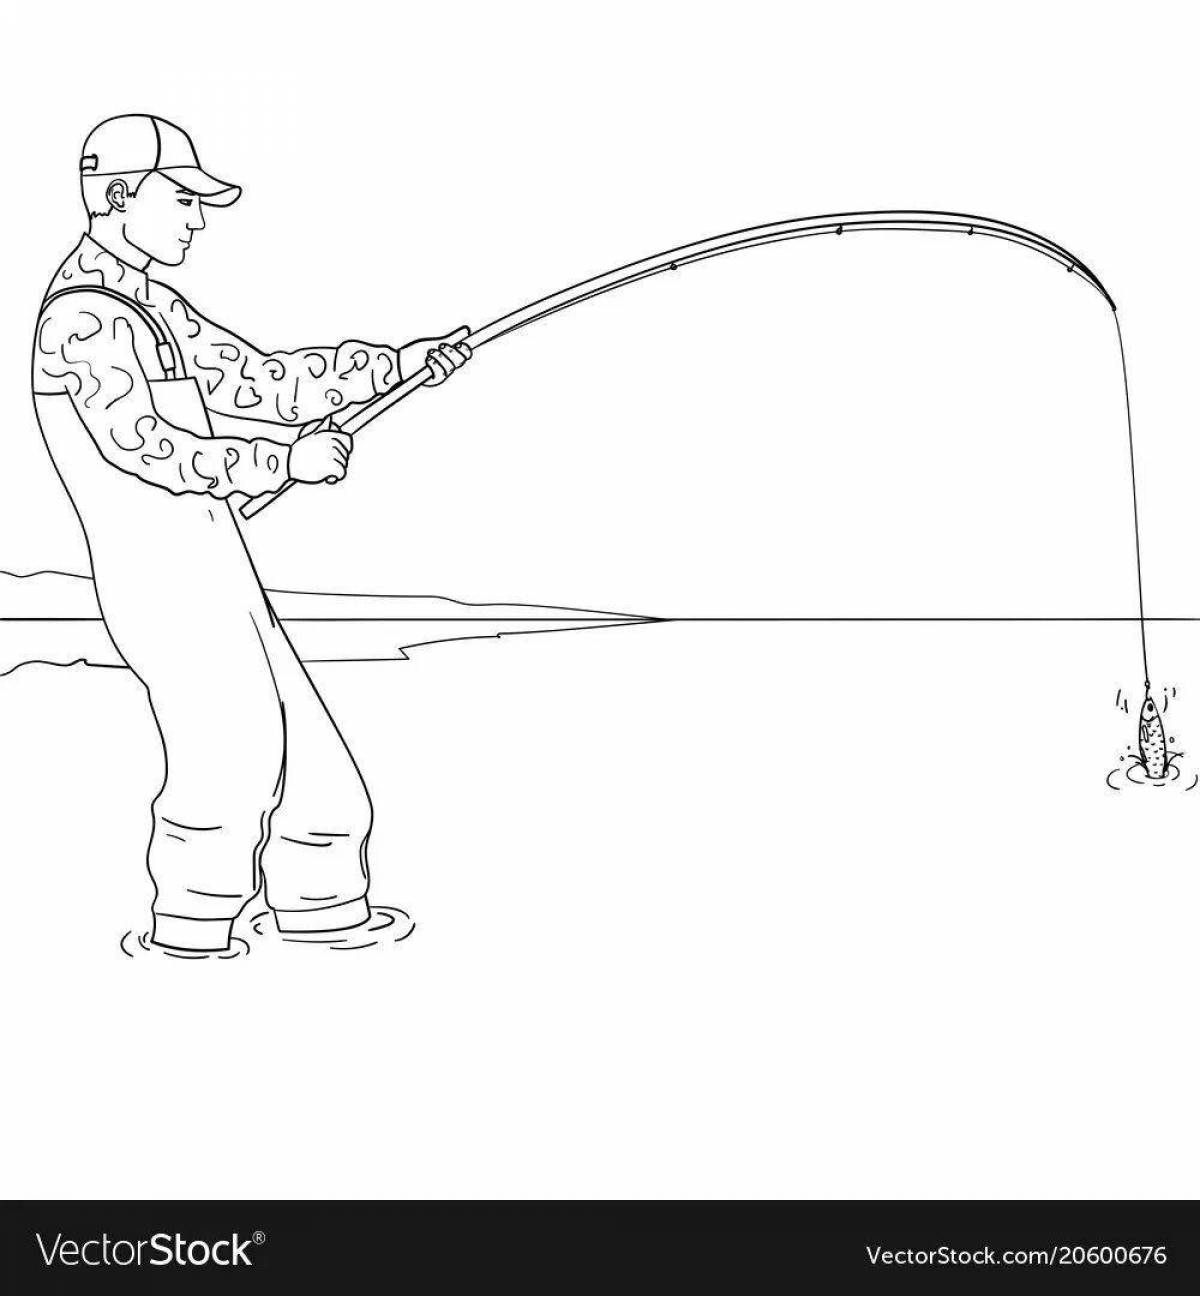 Children's fishing rod #14